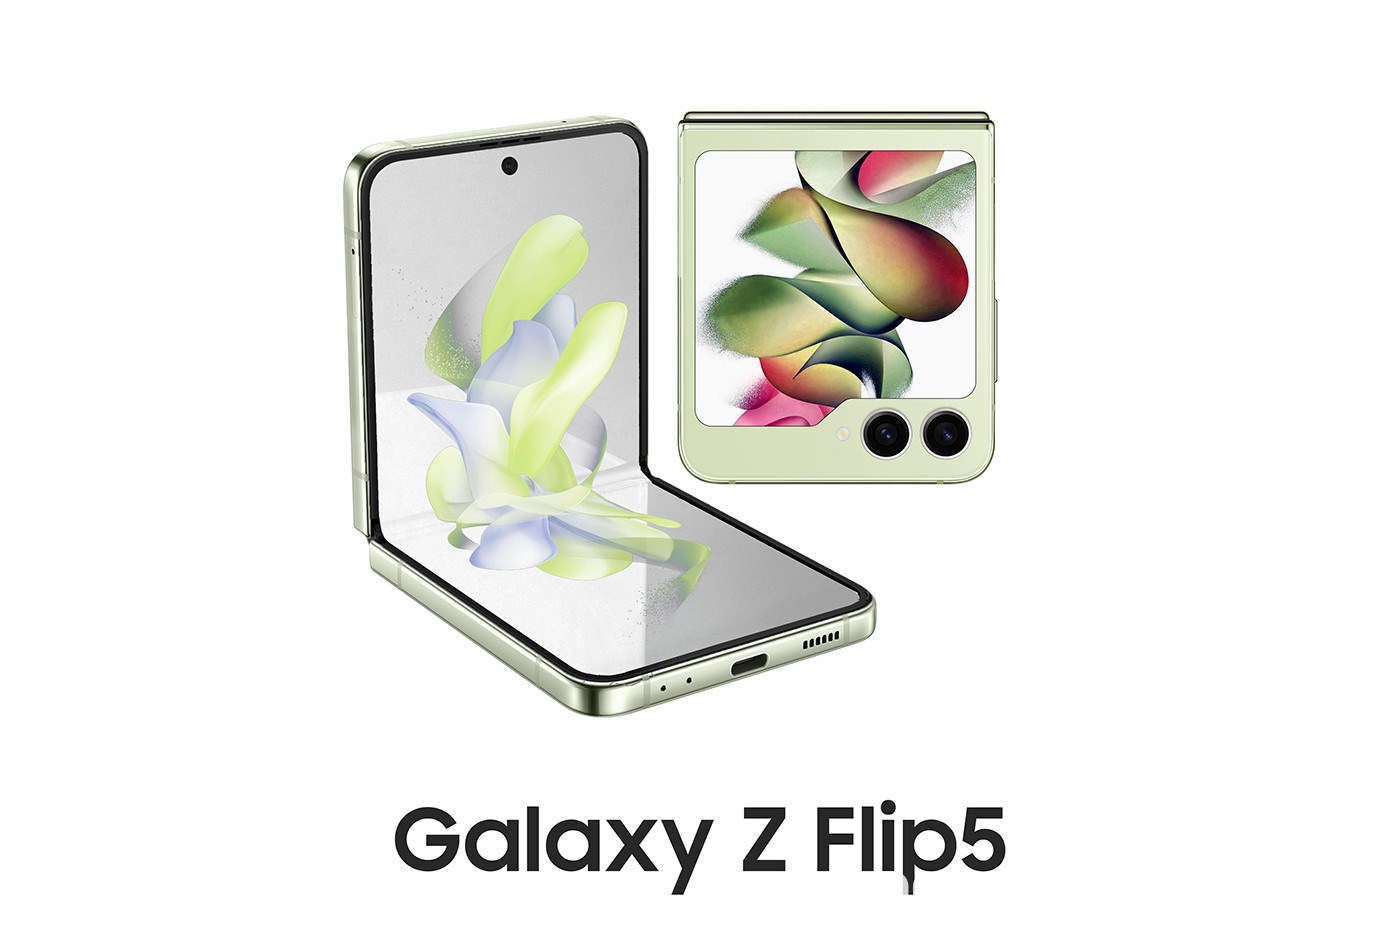 Samsung Galaxy Z Flip 5'in render görüntüleri yayınlandı